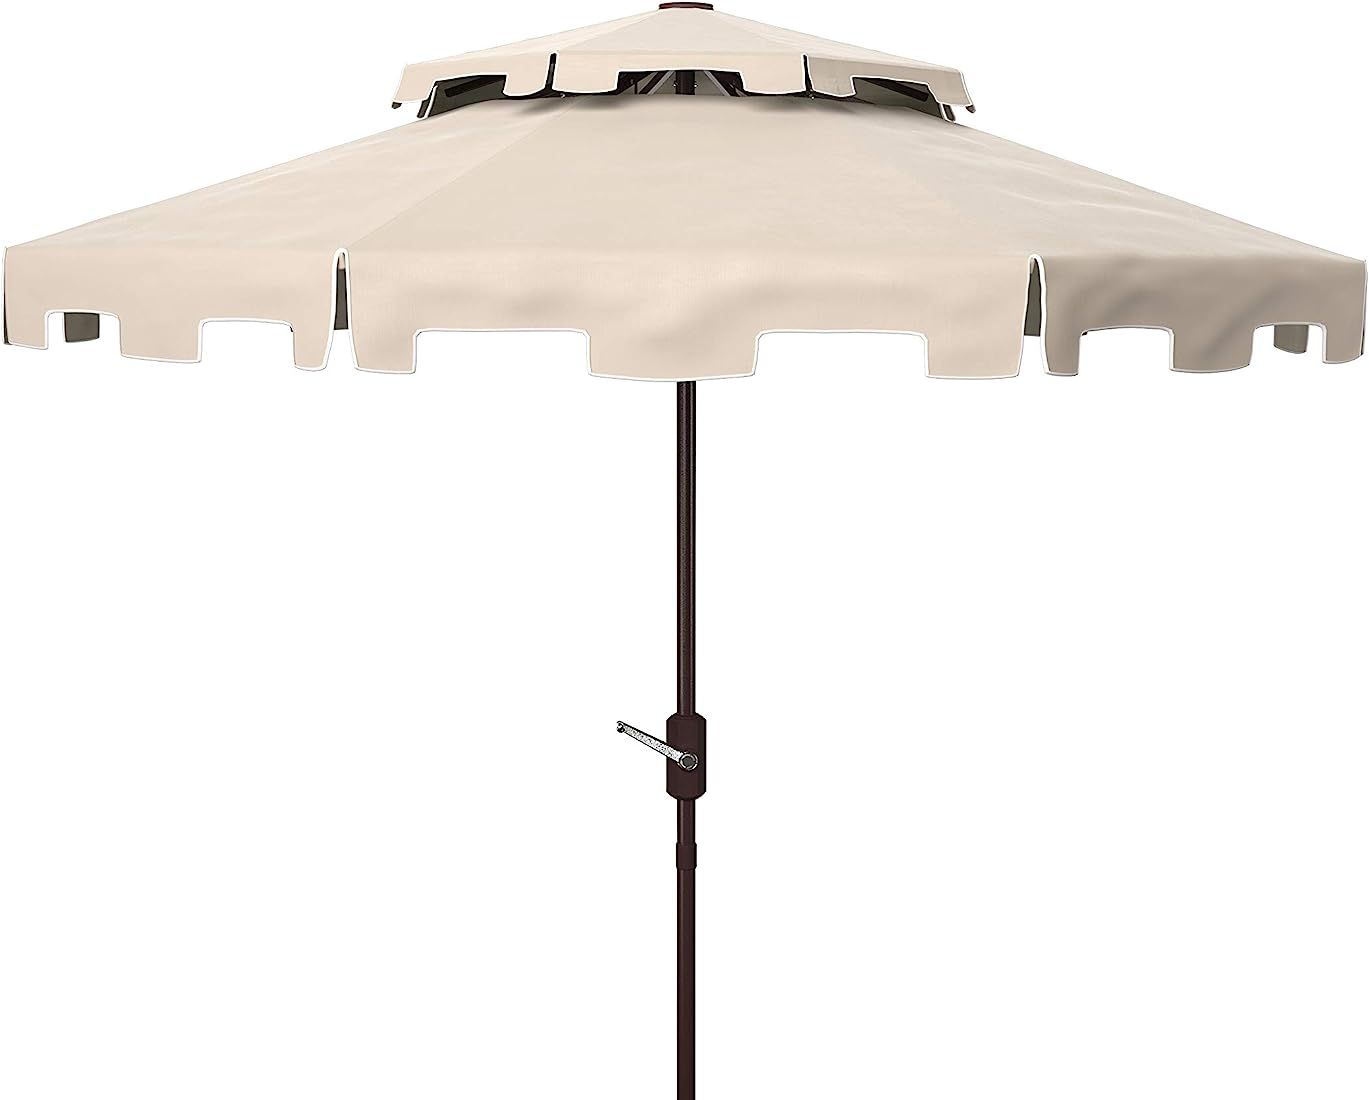 SAFAVIEH Outdoor Zimmerman 9-Foot Double Top Market UV Protected Umbrella | Amazon (US)